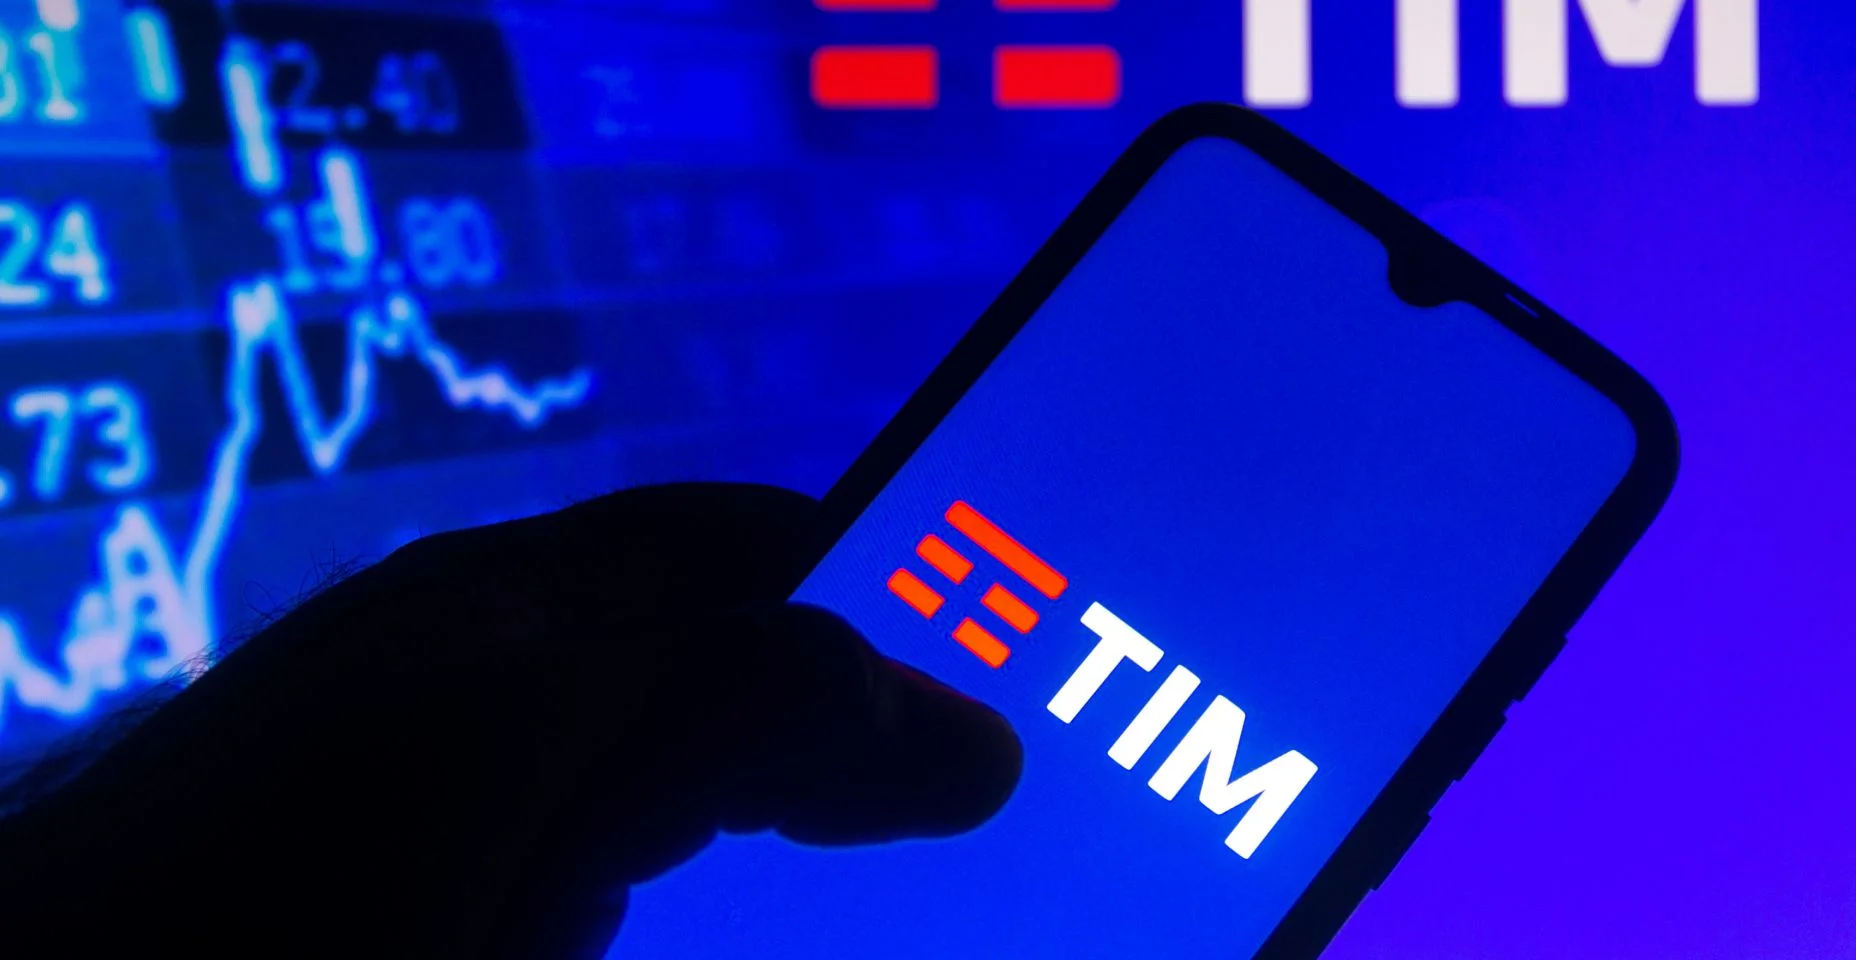 Nesta ilustração fotográfica o logotipo da TIM visto exibido em um smartphone com as informações do mercado de ações ao fundo.